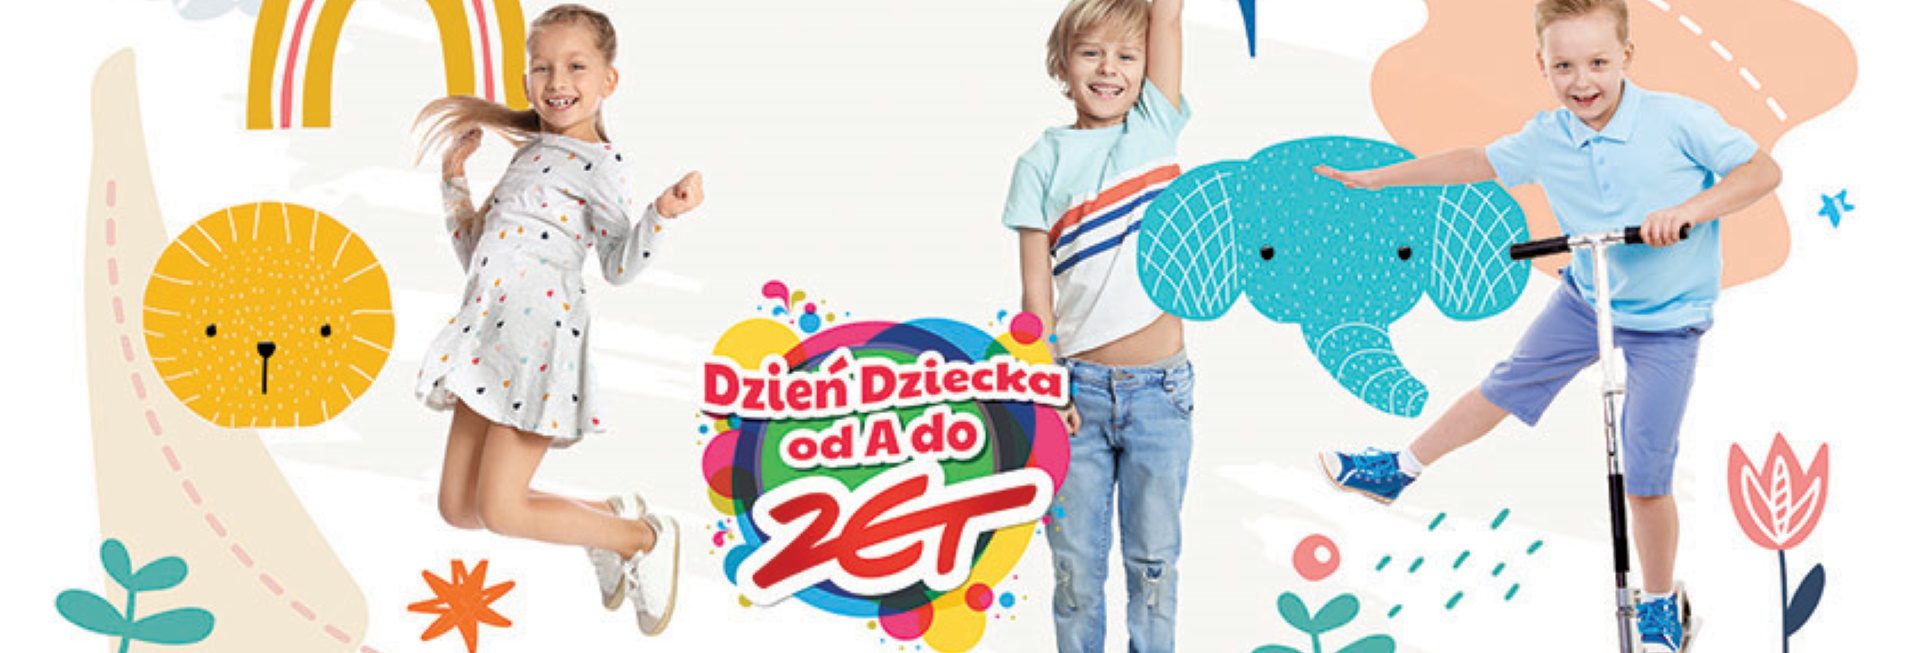 Plakat graficzny zapraszający do Olsztyna na Dzień Dziecka od A do ZET!!! Olsztyn 2022.